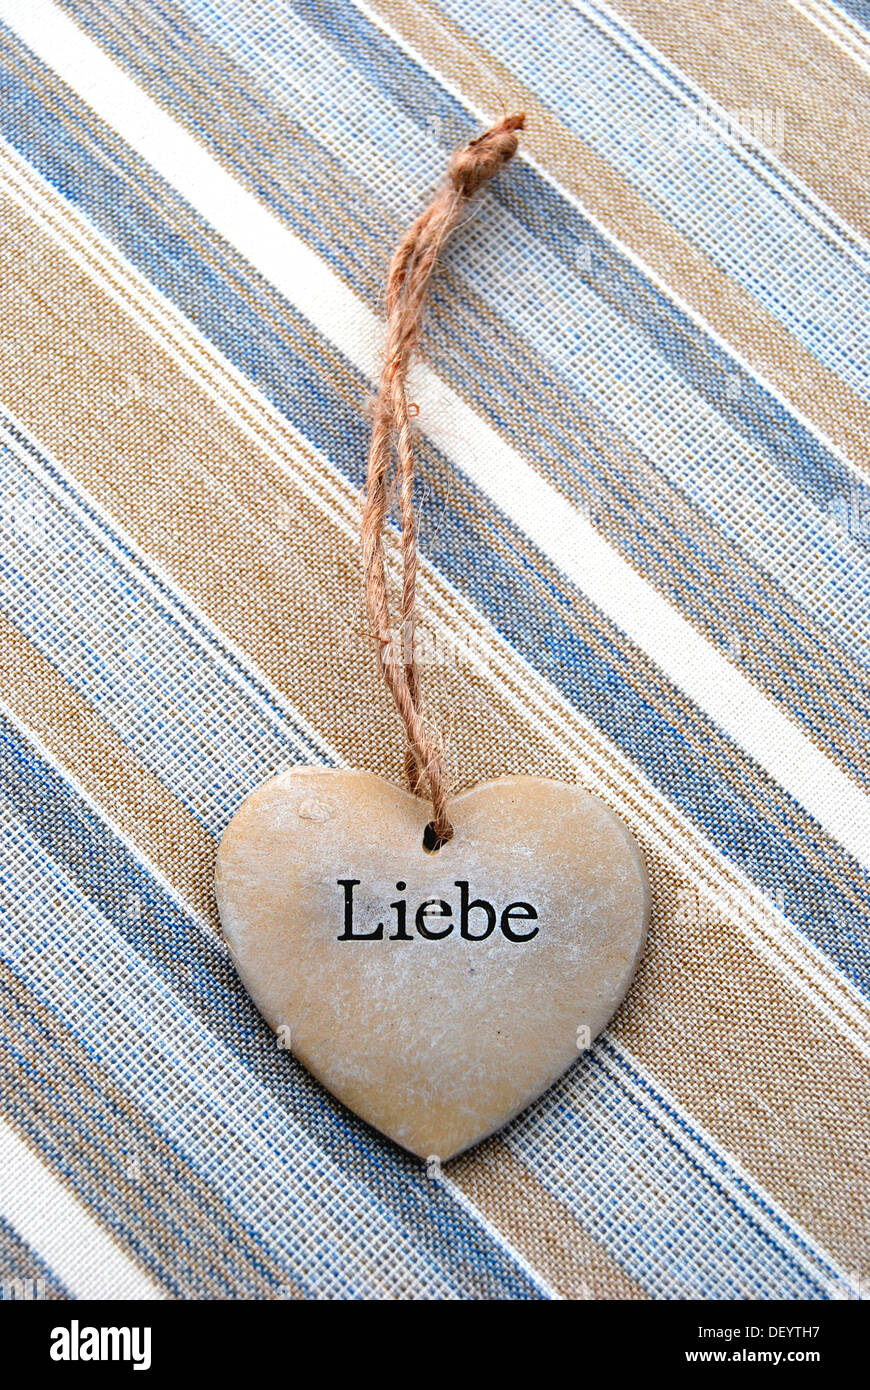 Le lettrage 'Liebe', l'allemand pour 'Amour' sur un coeur de pierre Banque D'Images